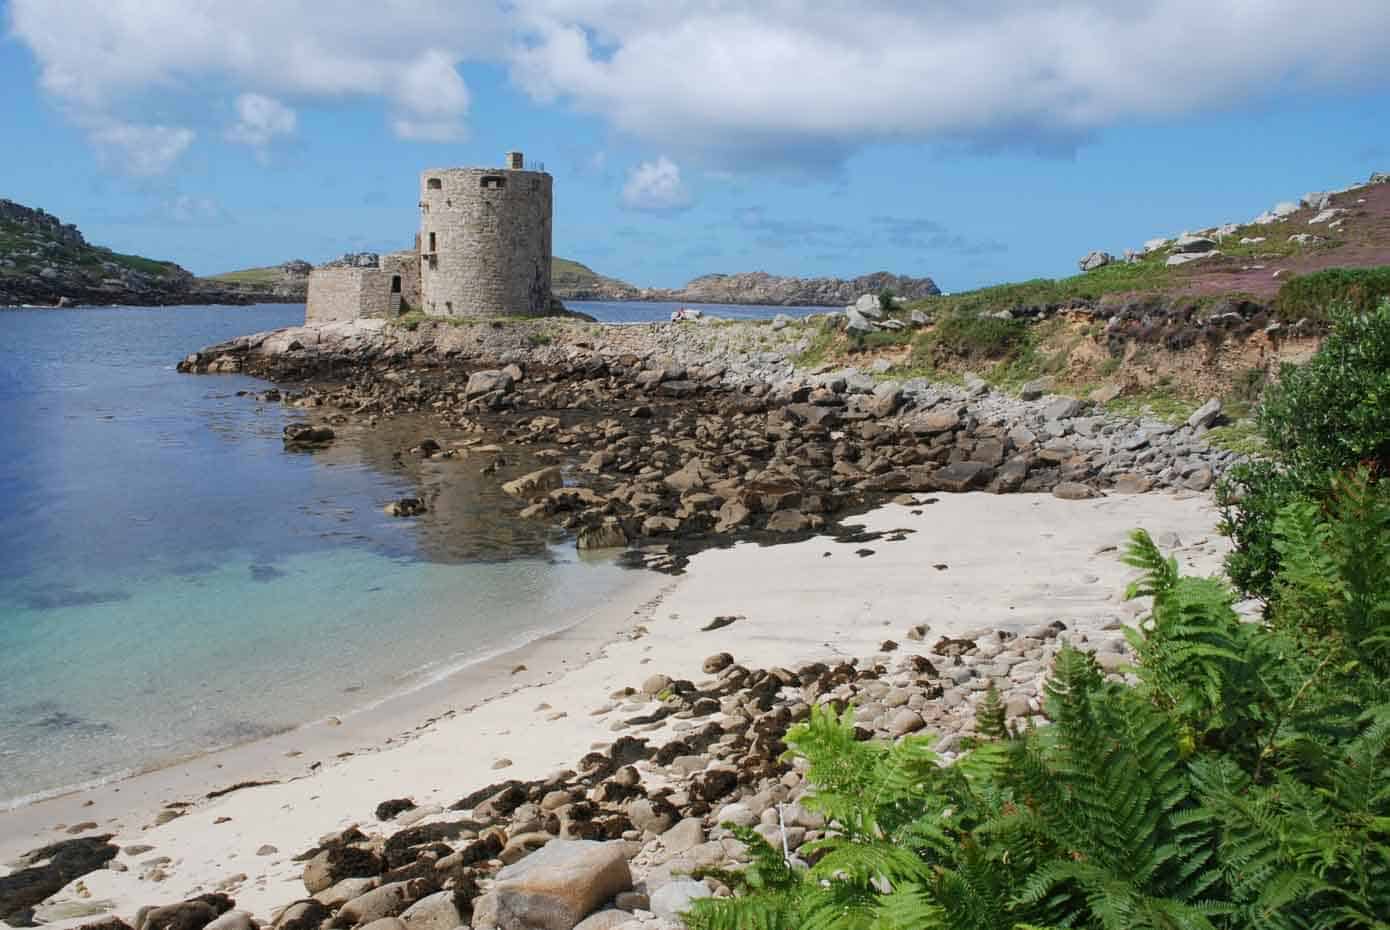 Small castle on a rocky beach.